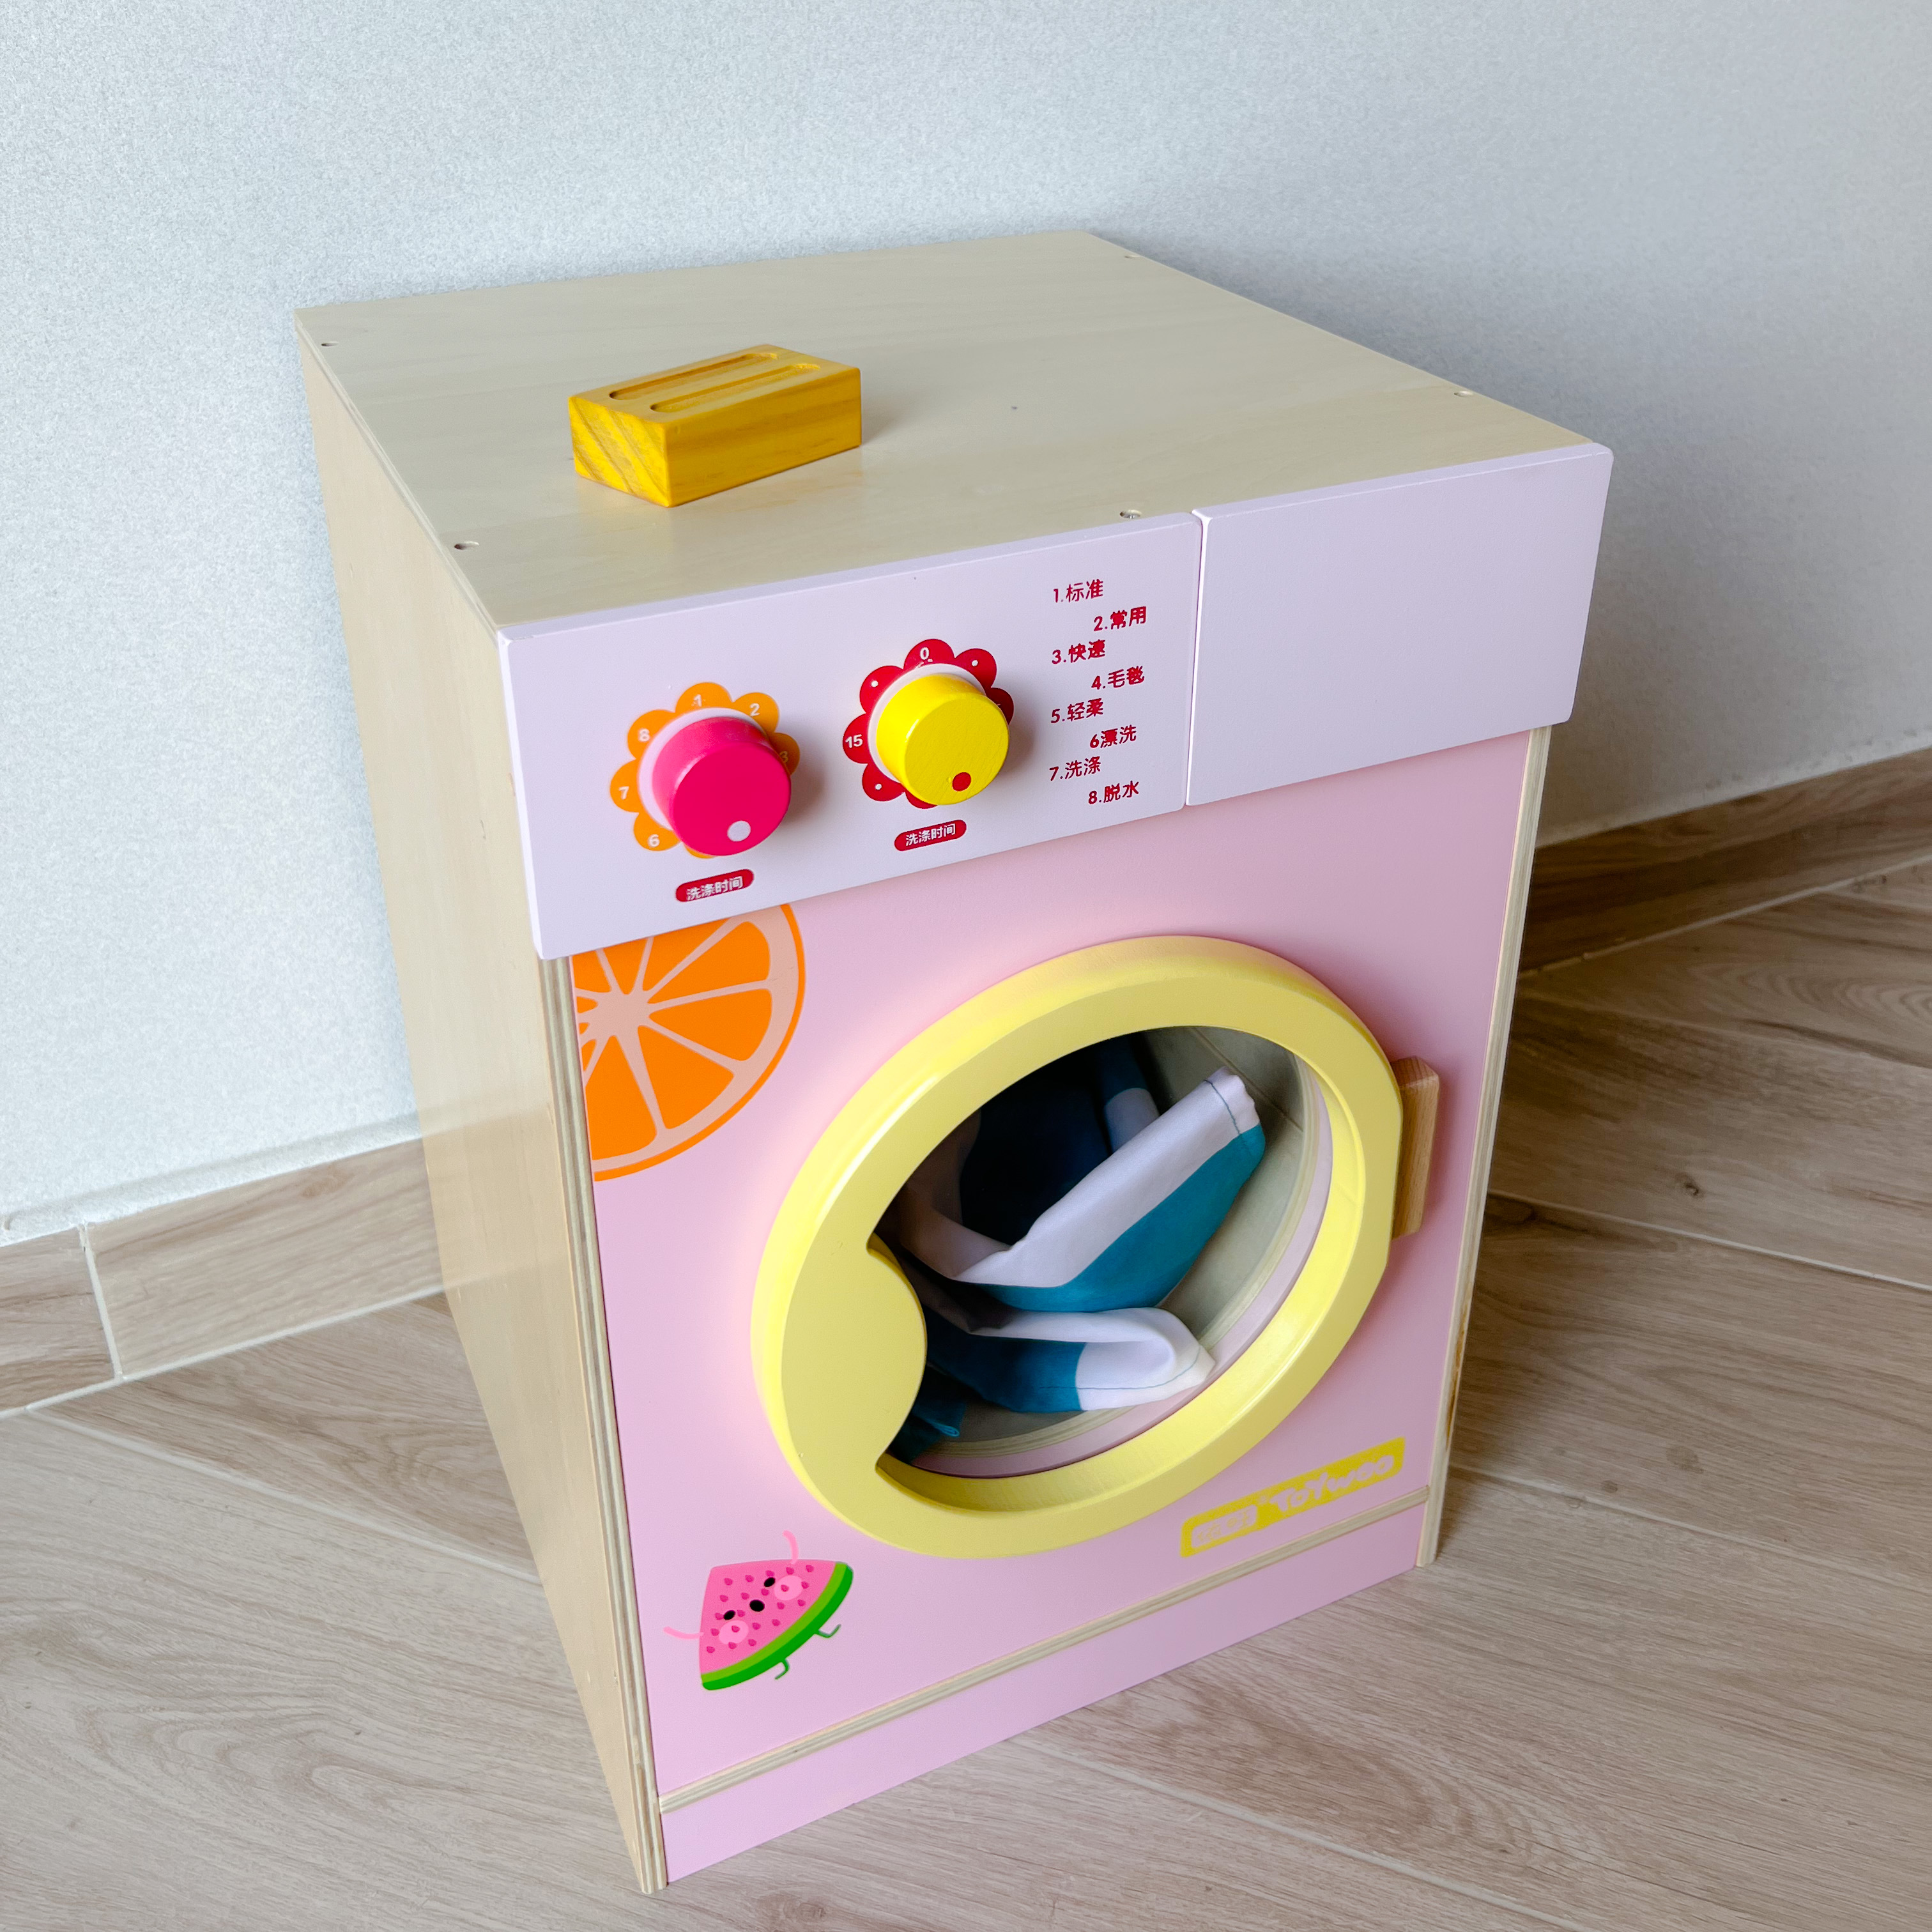 新款ToyWoo儿童厨房玩具女孩宝宝仿真木制过家家厨具套装生日礼物